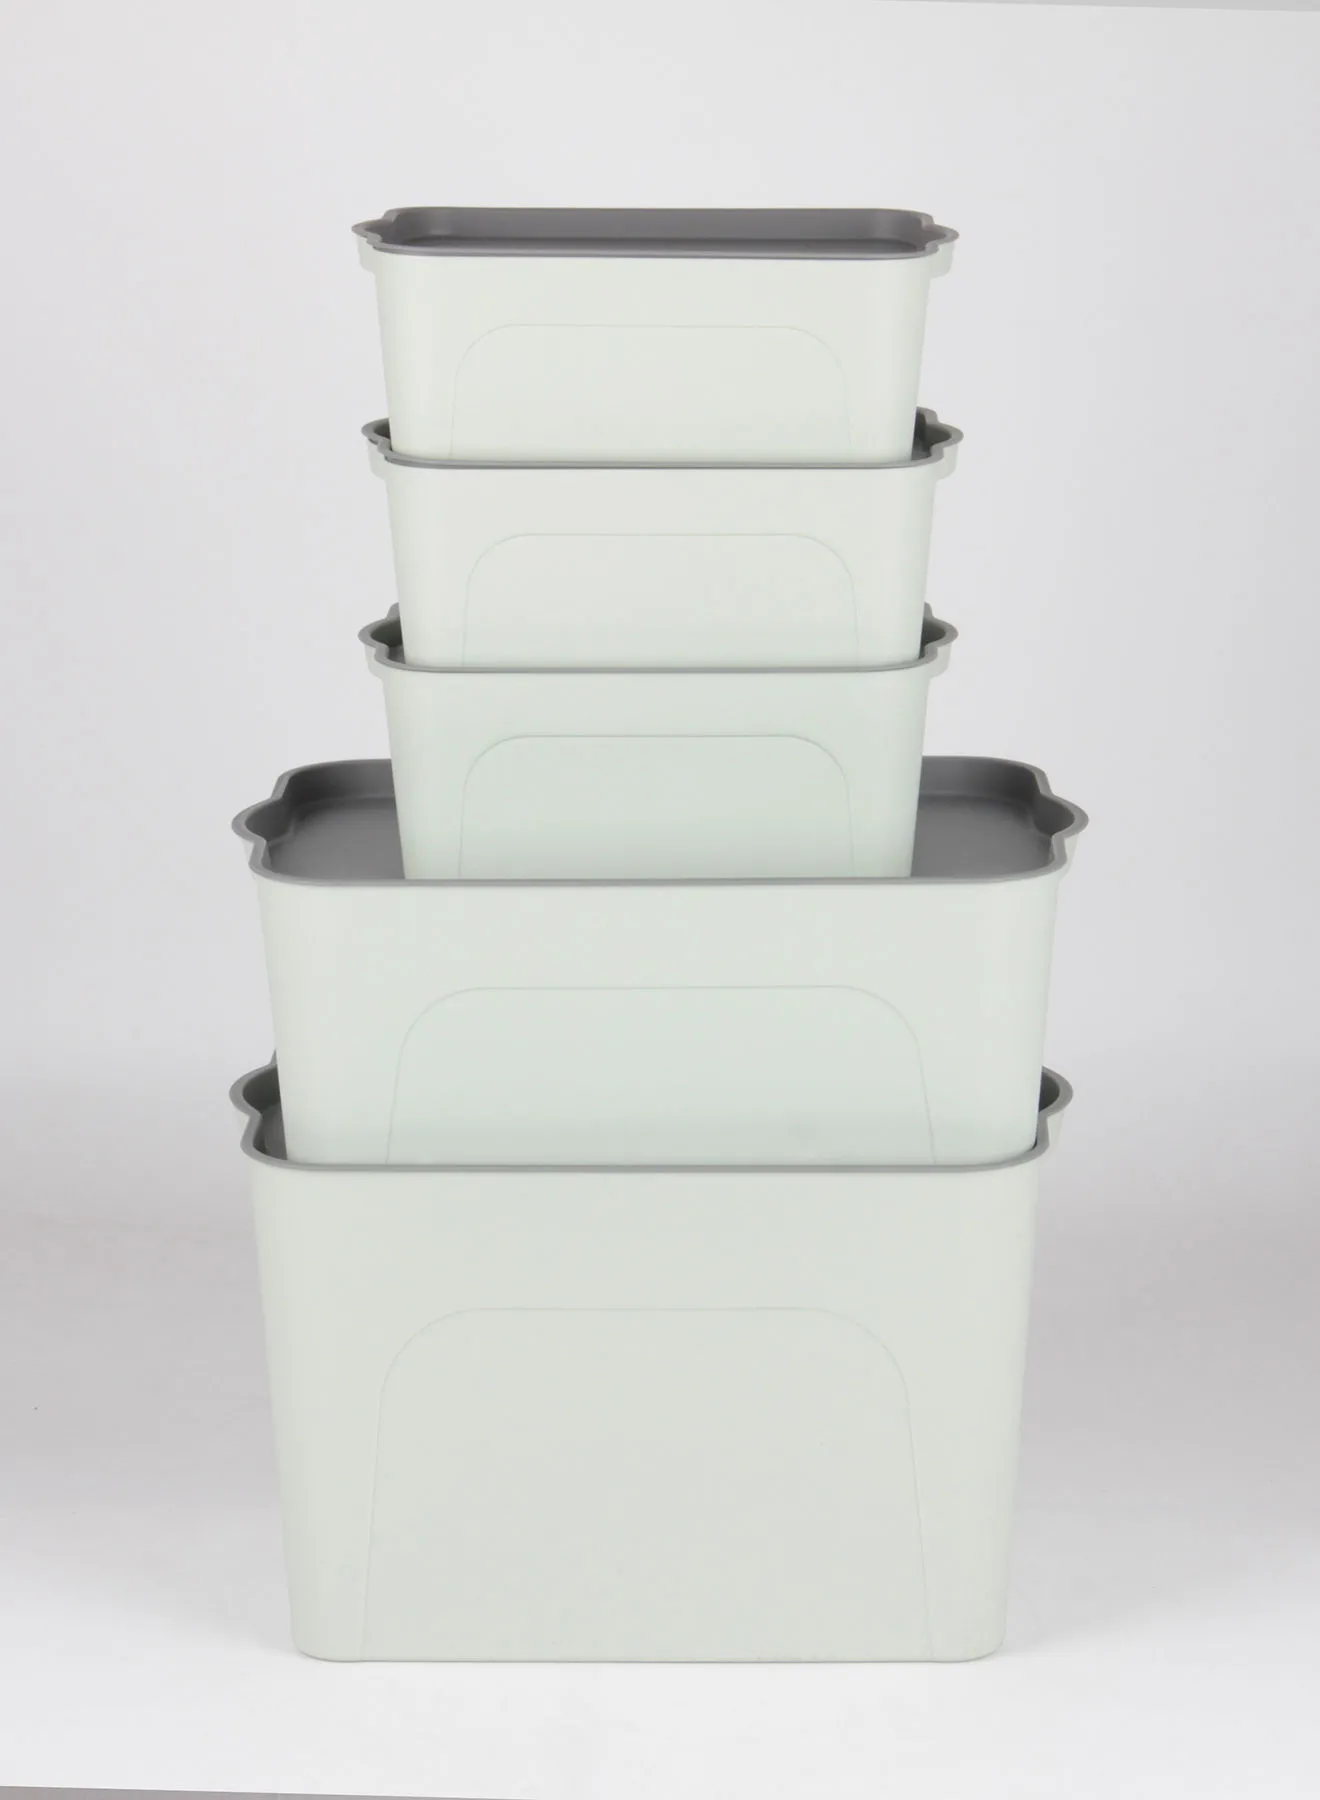 مجموعة حاويات تخزين من أمل مكونة من 5 قطع مريحة للاستخدام اليومي التخزين البسيط الصحي والمنظم TG51294S5 أخضر / رمادي 25 × 40 × 27 سم